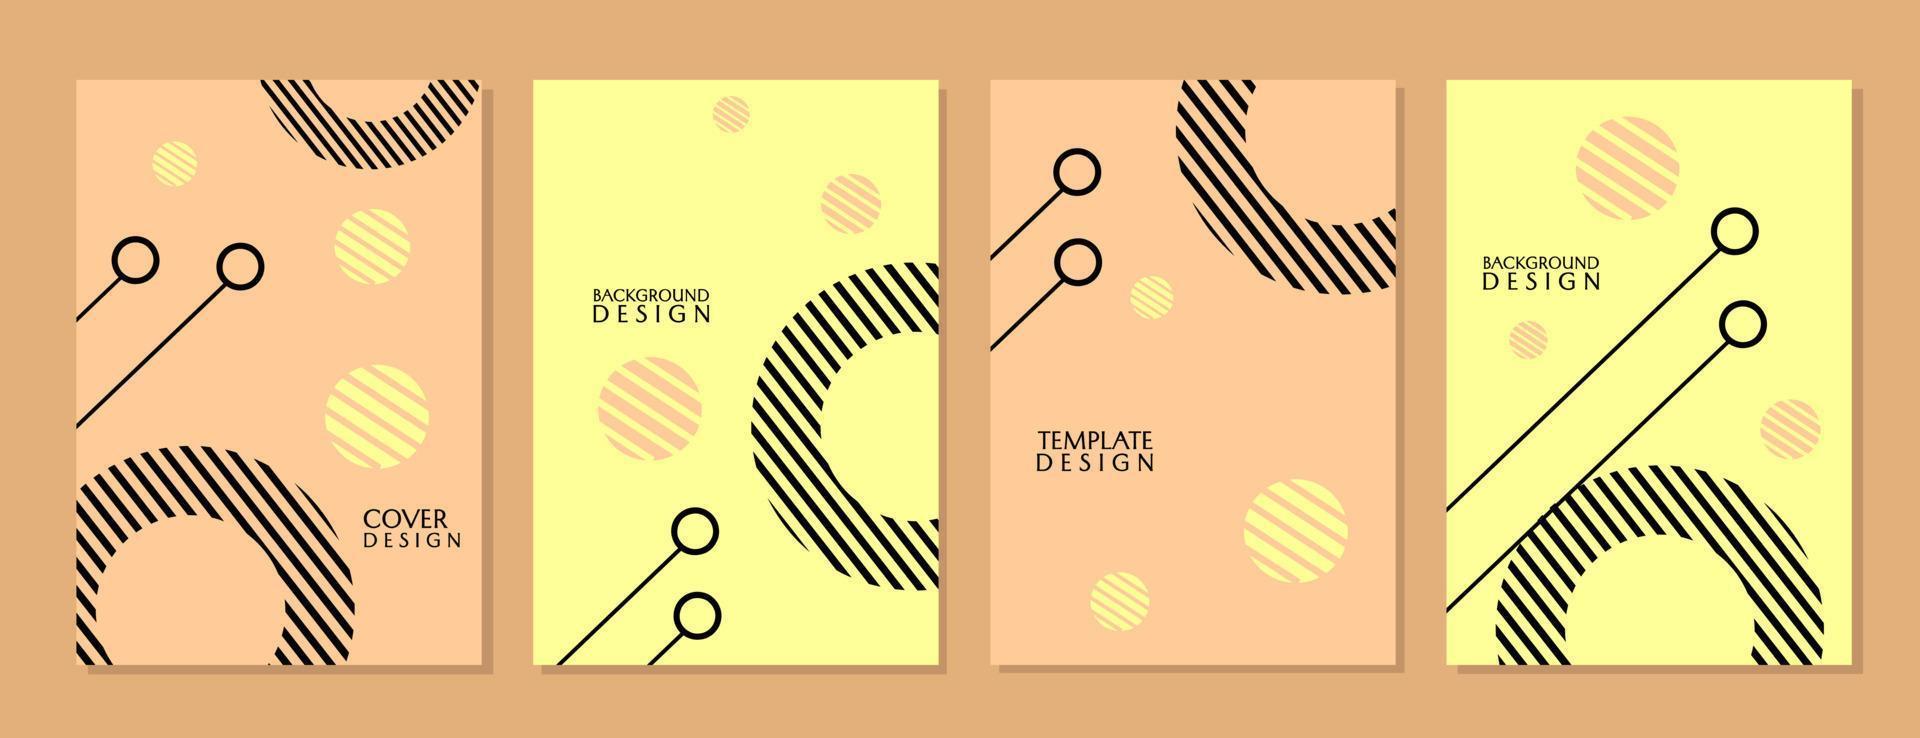 uppsättning av trendiga och minimala omslagsdesigner i geometrisk stil. brun bakgrund med cirkelelement. för omslag, broschyrer, presentationer vektor